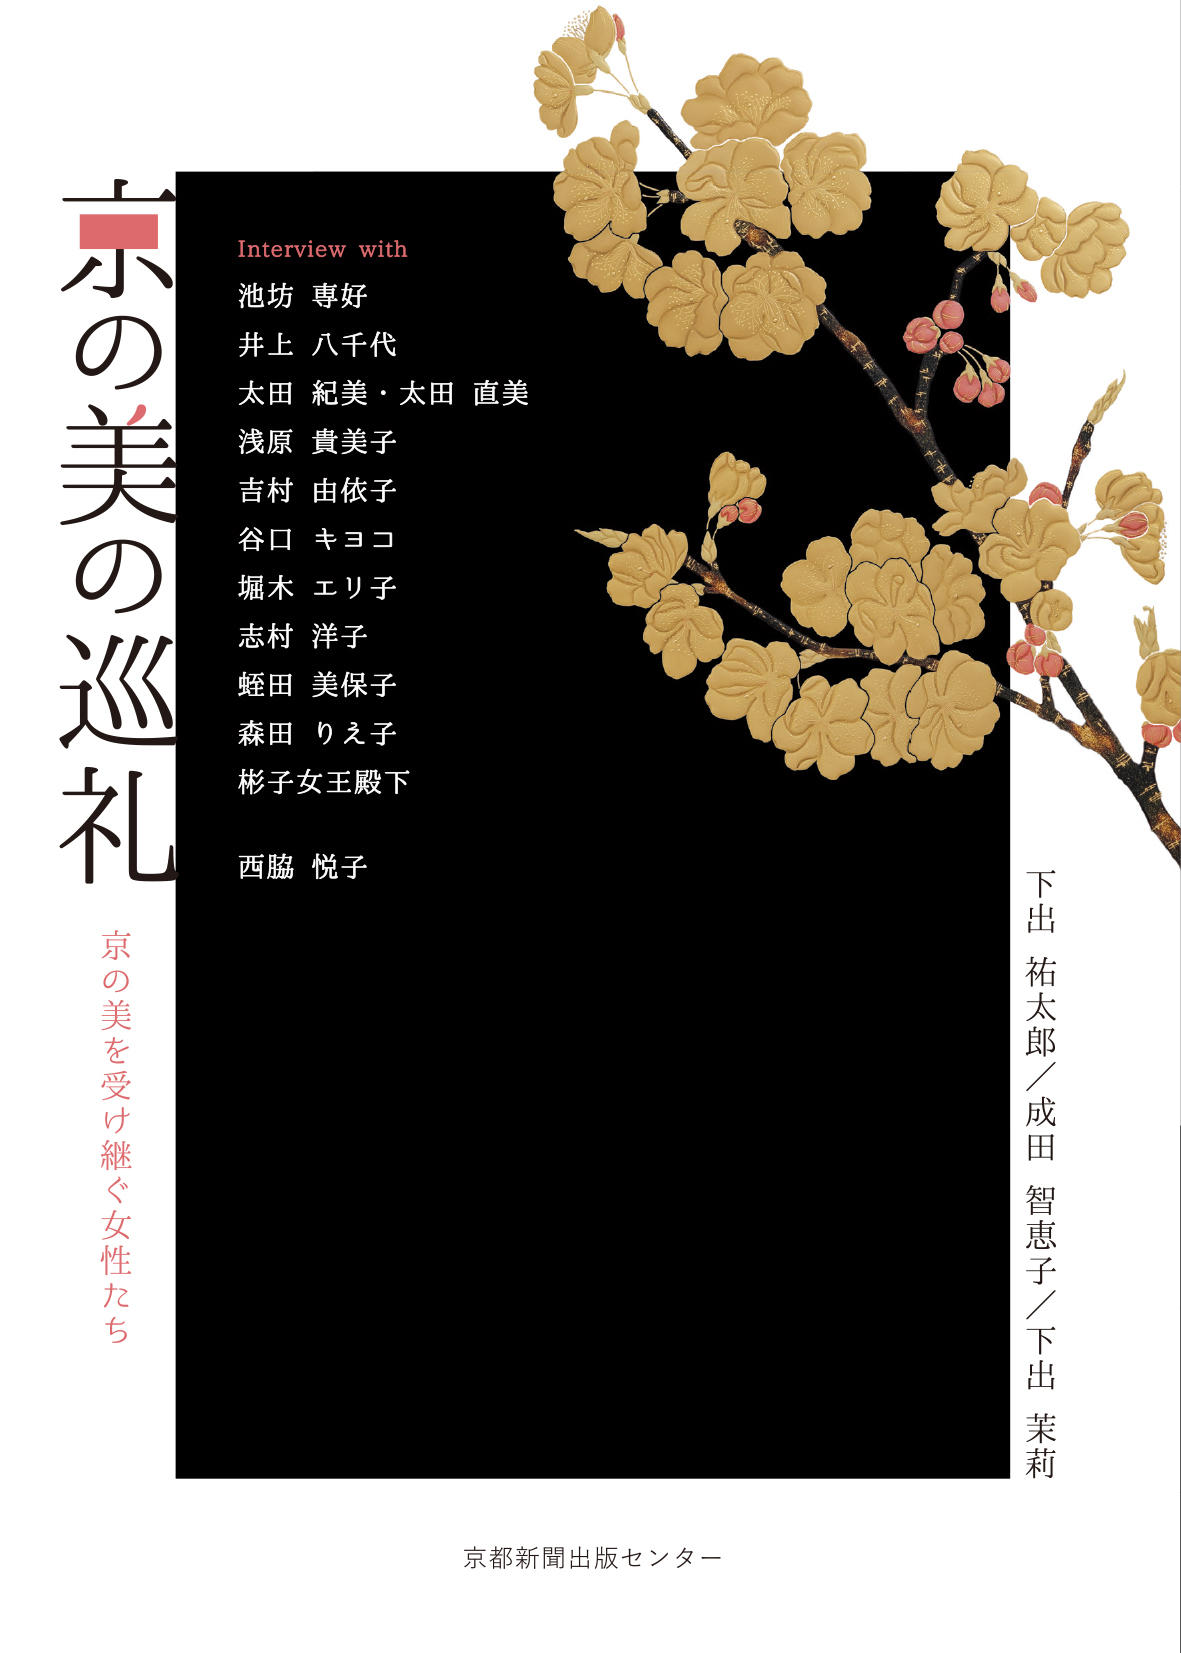 【京都産業大学】 -- 伝承されるさまざまな京の美 -- 文化学部 下出 祐太郎教授ら著書の書籍が出版